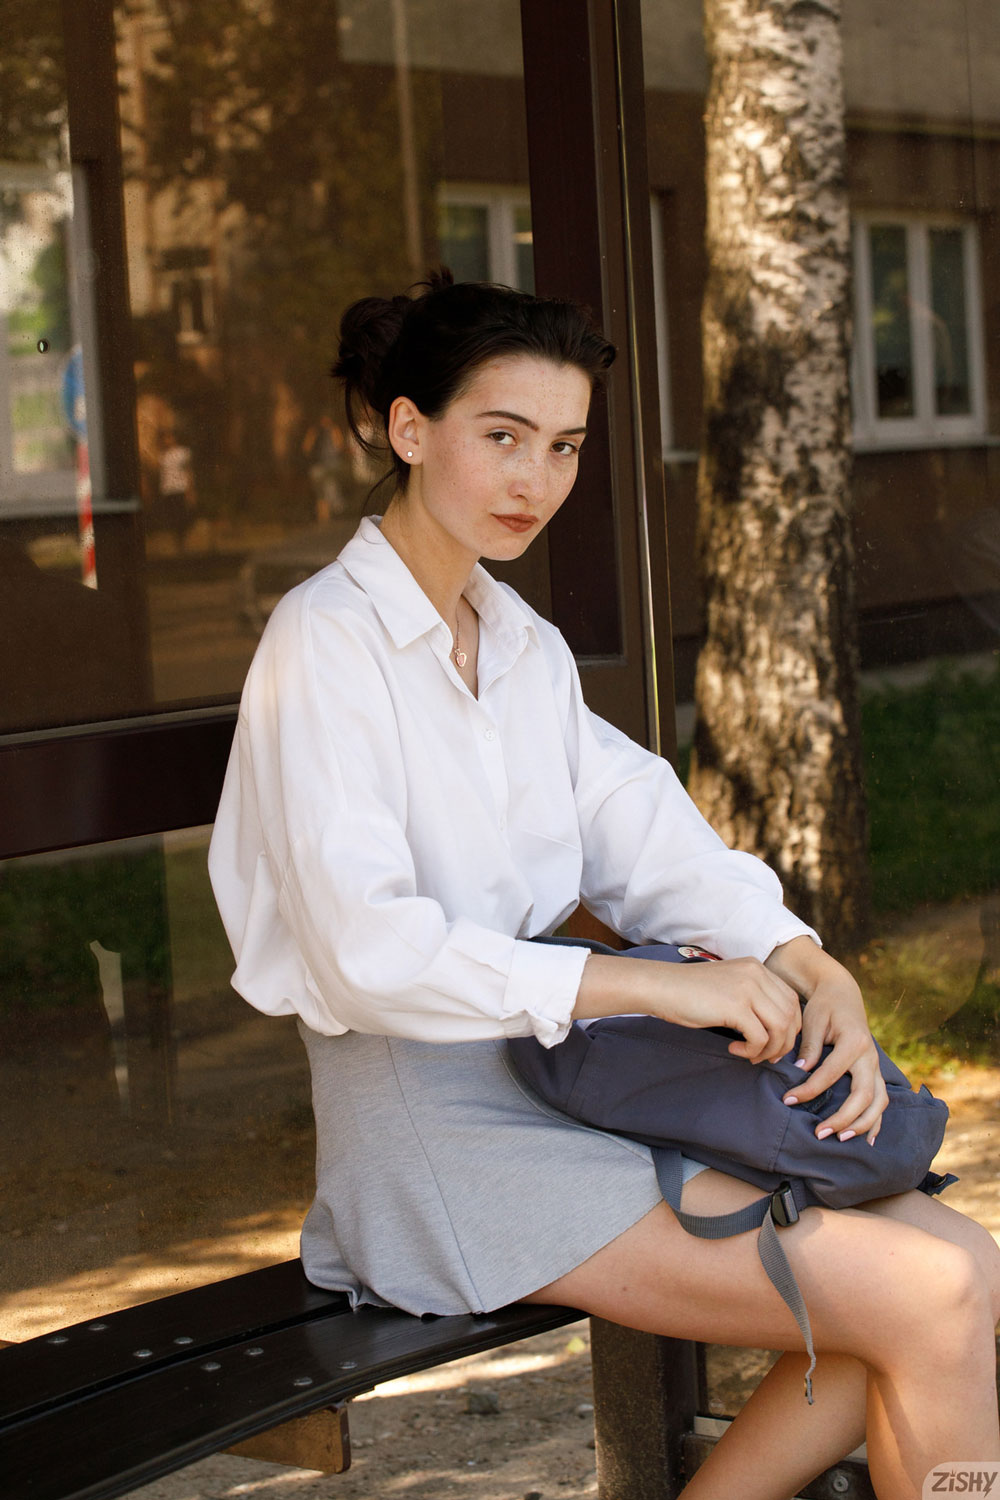 Tamara Damachuk Generation Zen